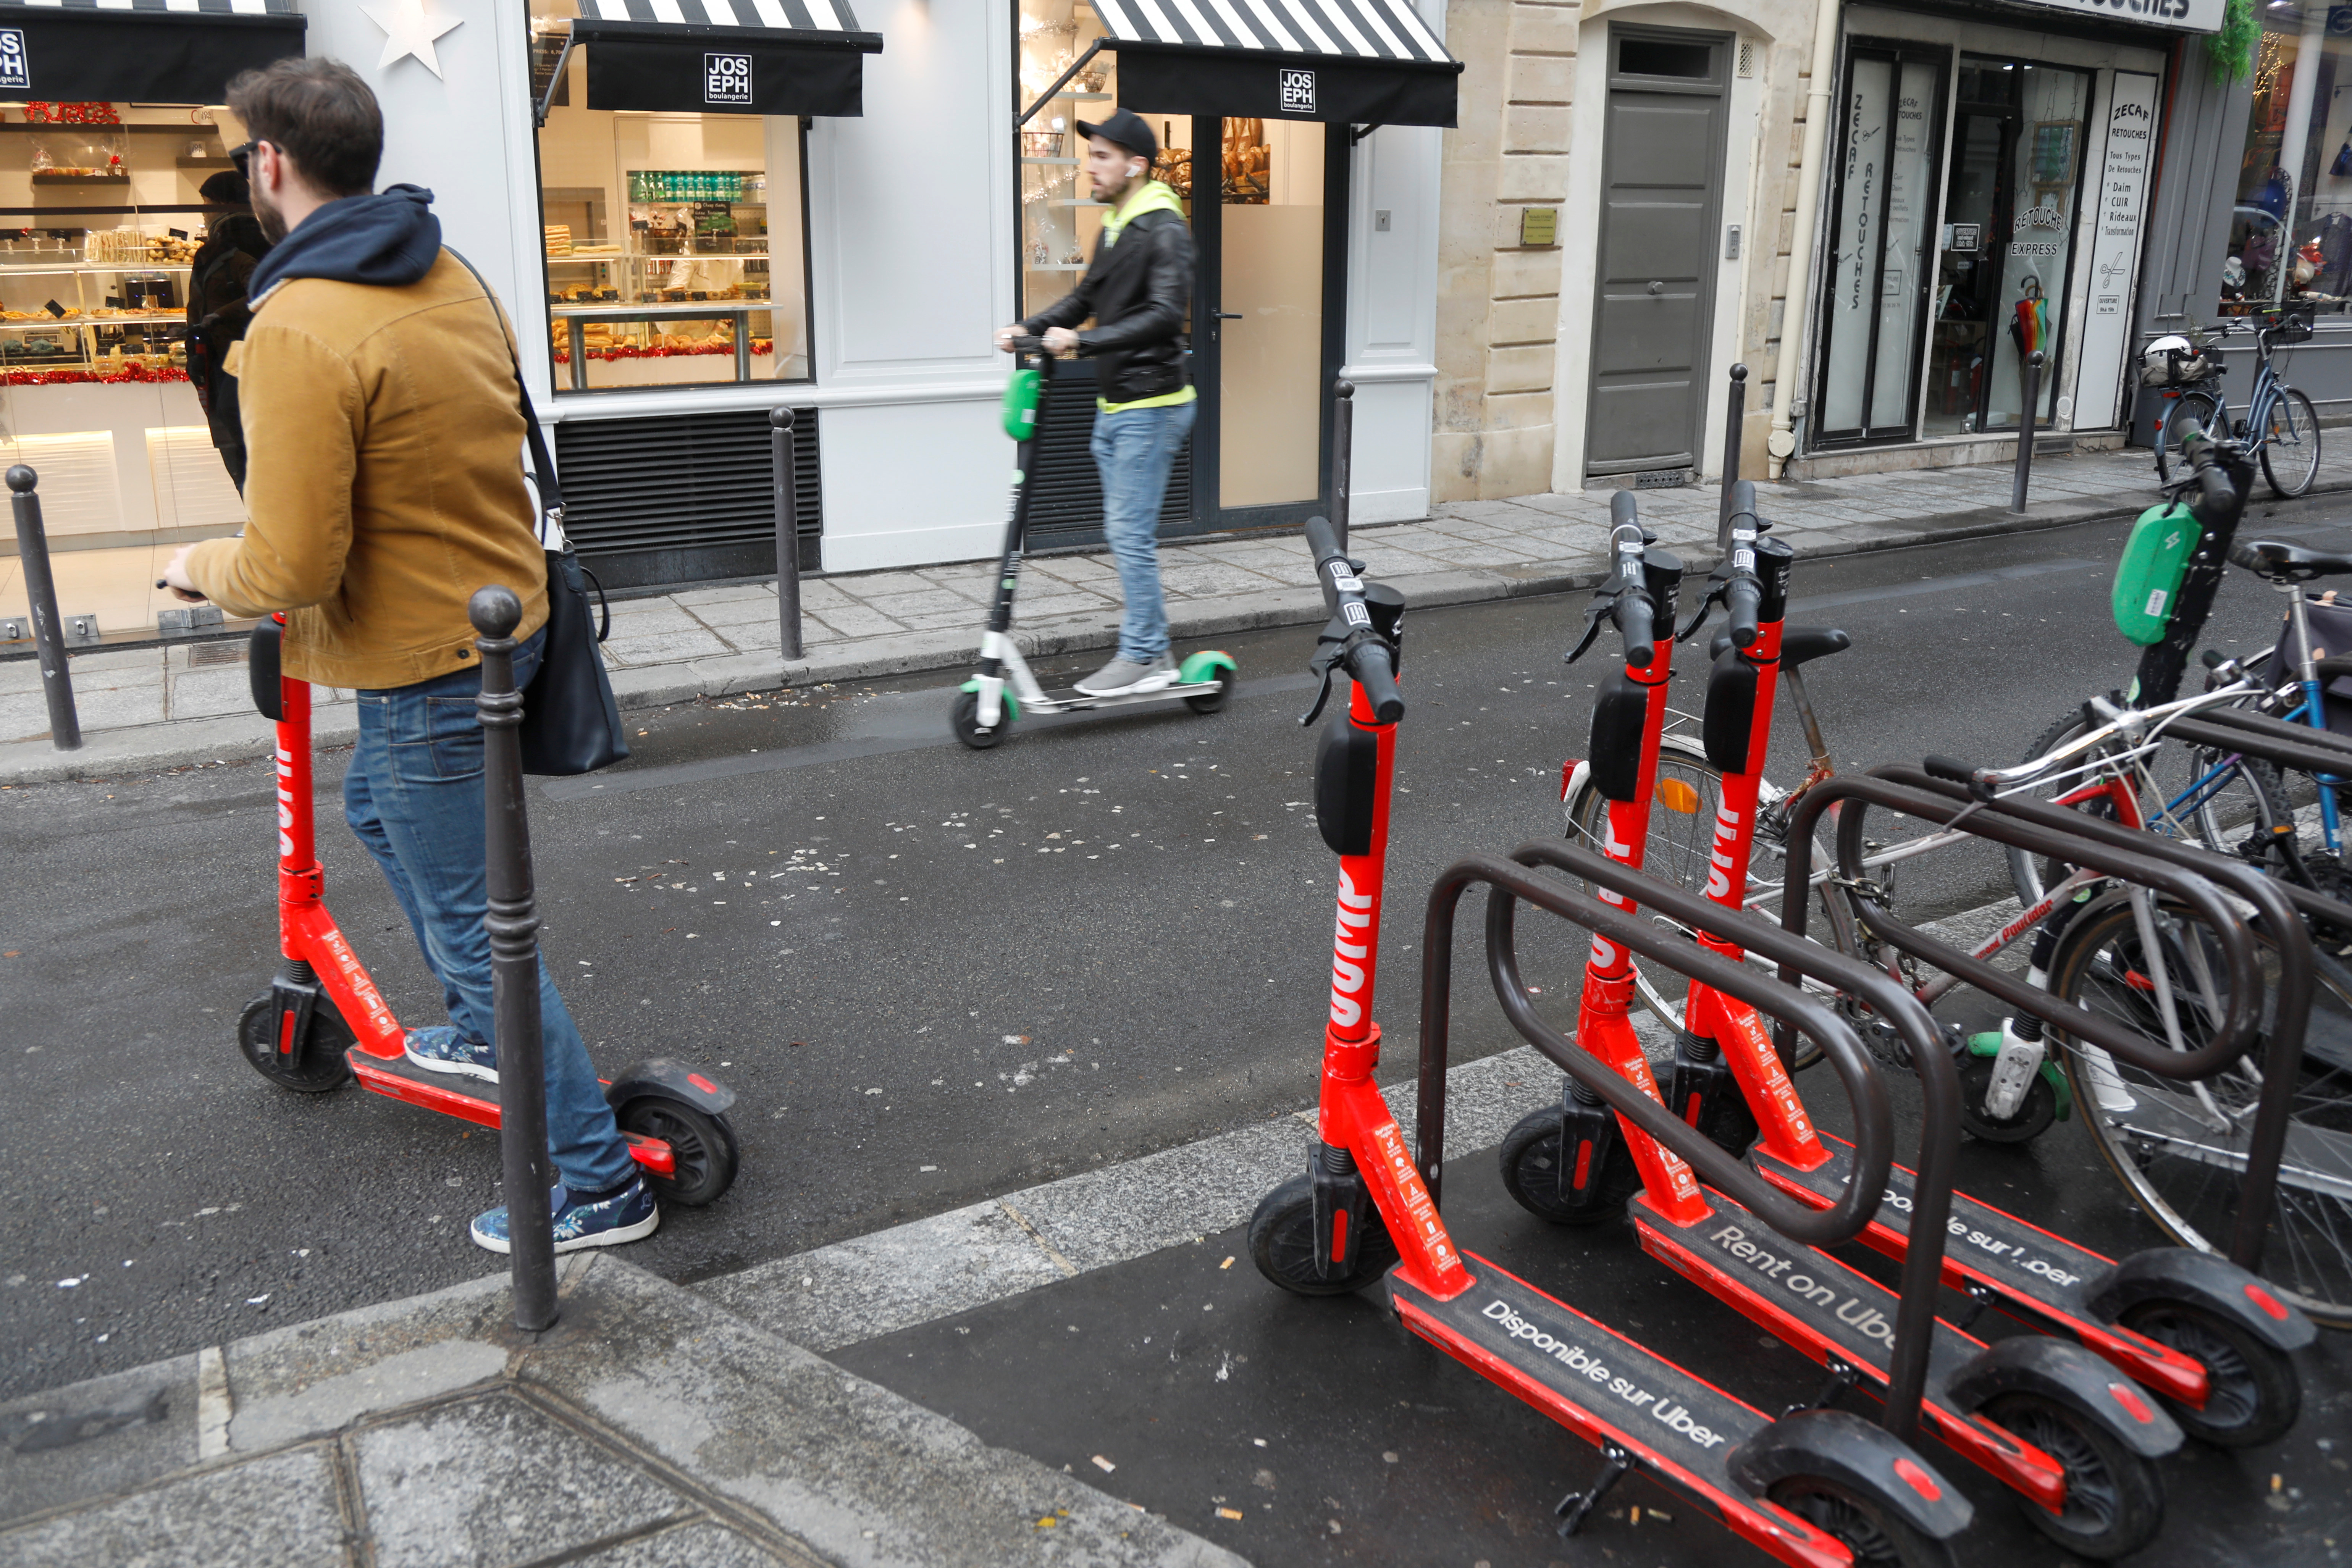 Patinetes eléctricos de Uber Technologies Inc. se ven en una calle en París, Francia, 20 de diciembre de 2019. REUTERS/Charles Platiau/Archivo